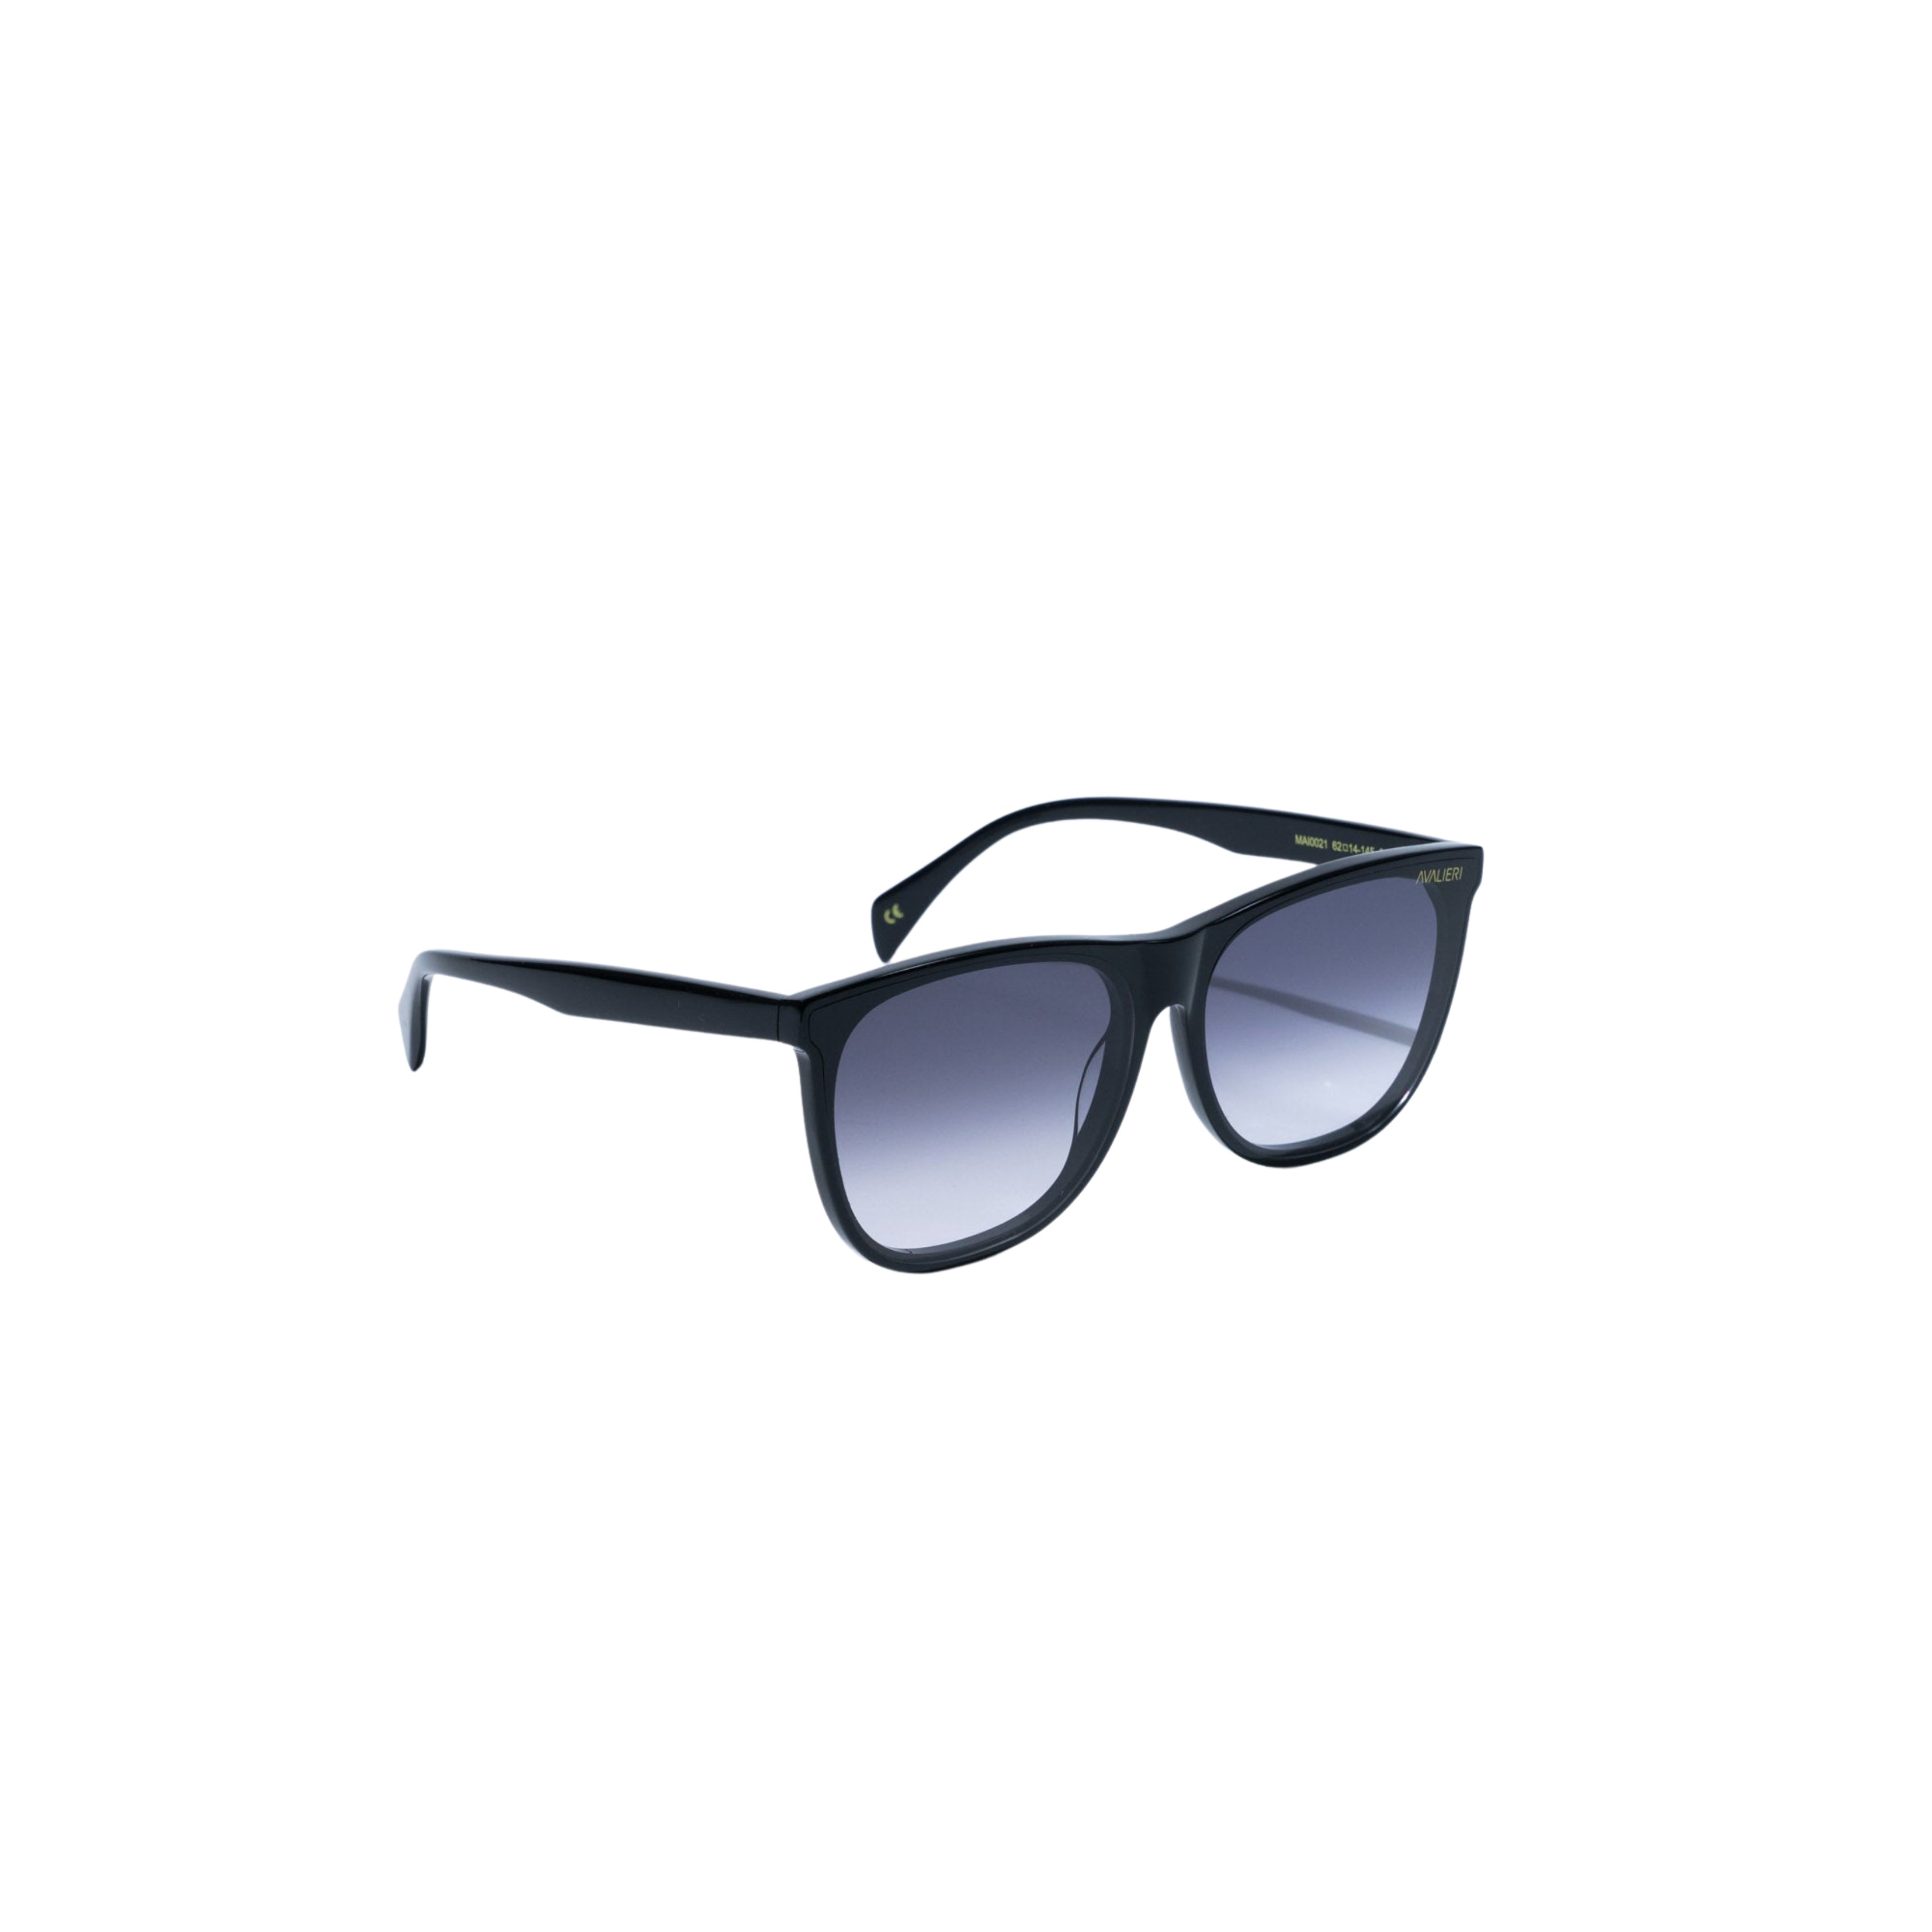 نظارات شمسية باللون الأسود للرجال والنساء من أفاليري - AVSG-0001